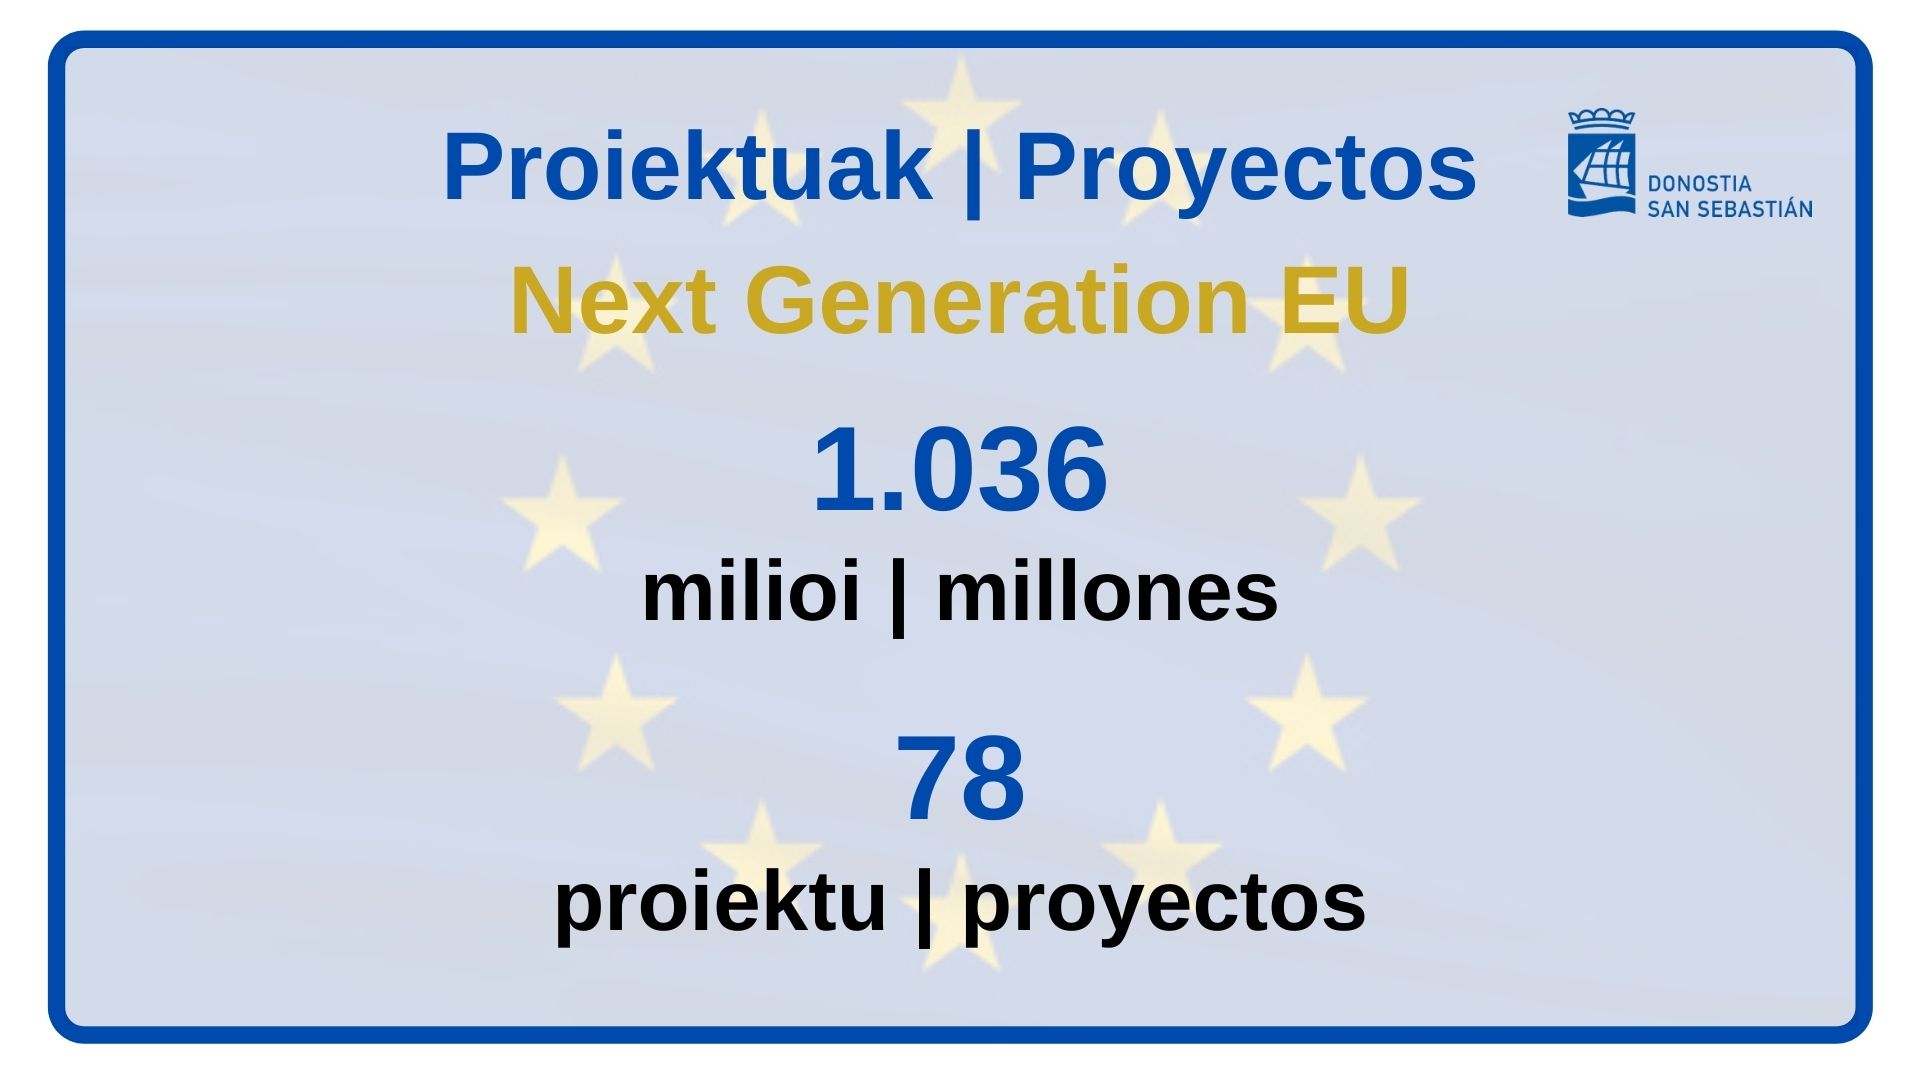 Donostia solicitará 1.036 millones de euros a la Unión Europea para la realización de 78 proyectos